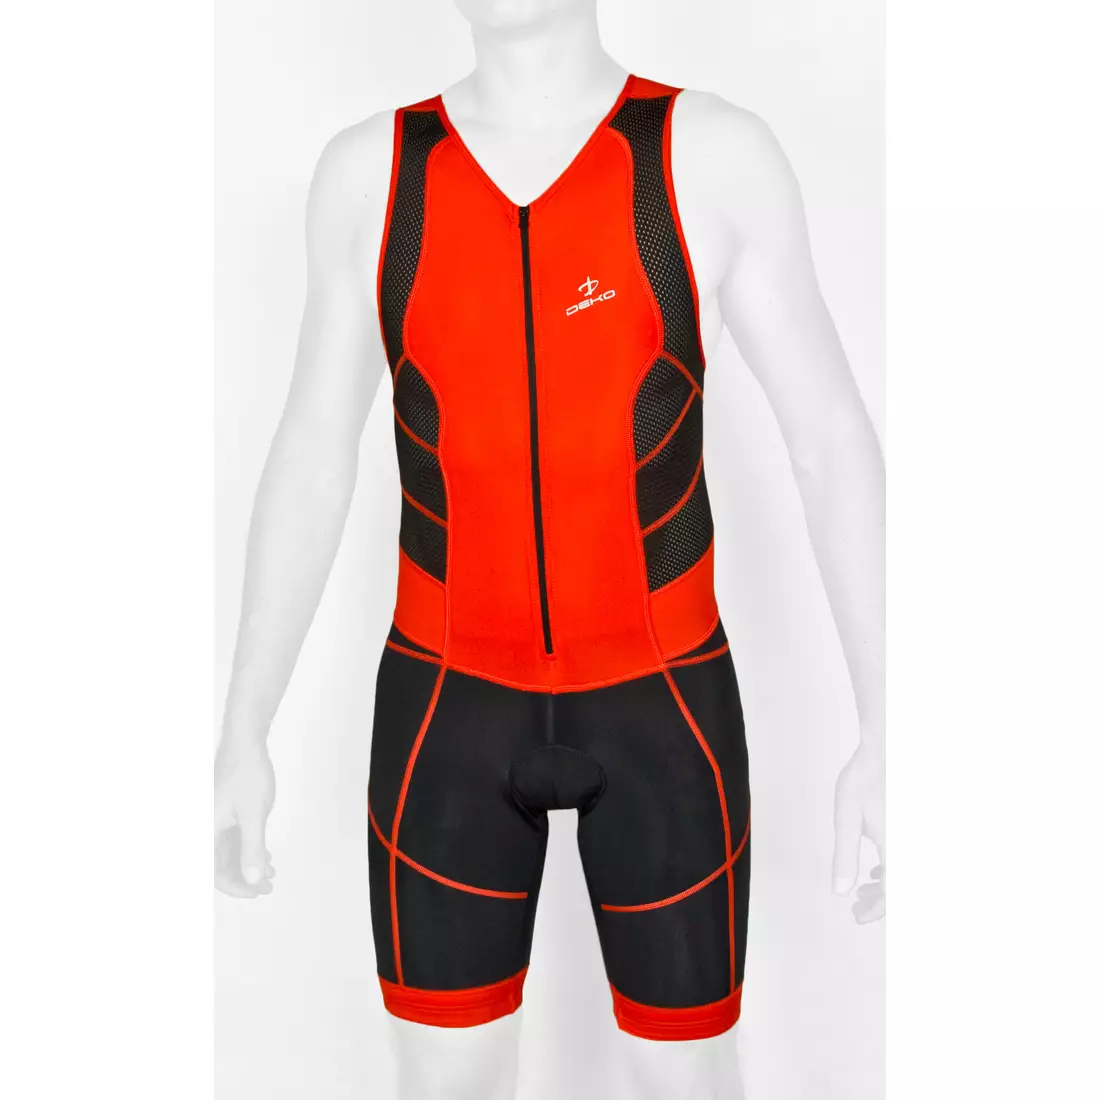 DEKO TRST-203 men's triathlon suit black and red